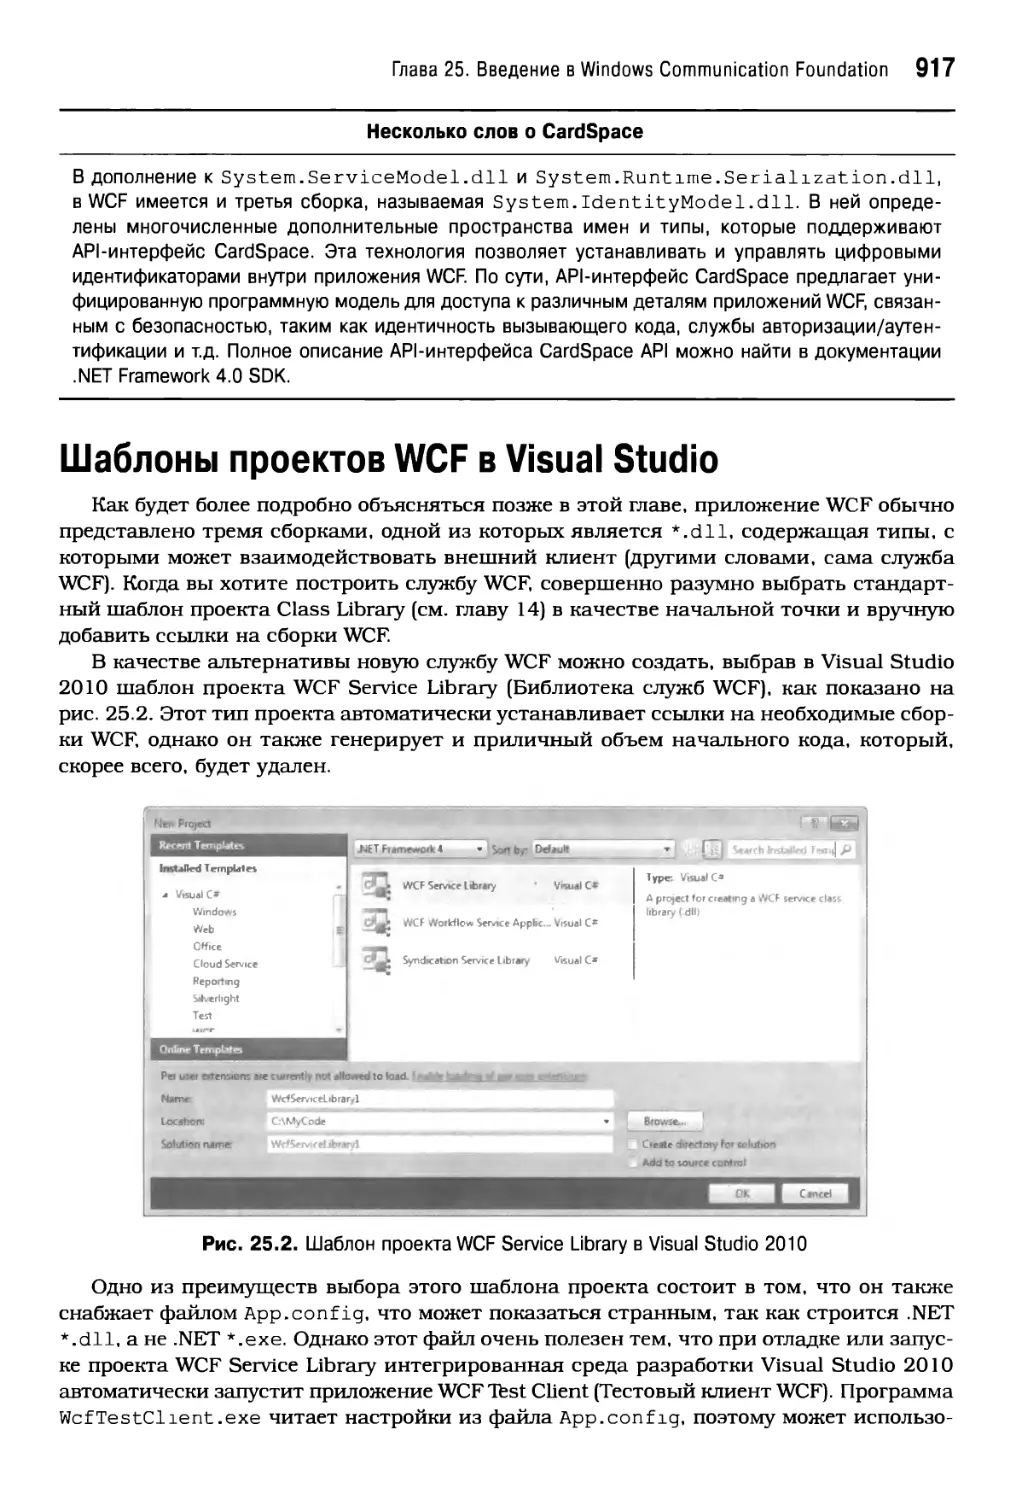 Шаблоны проектов WCF в Visual Studio